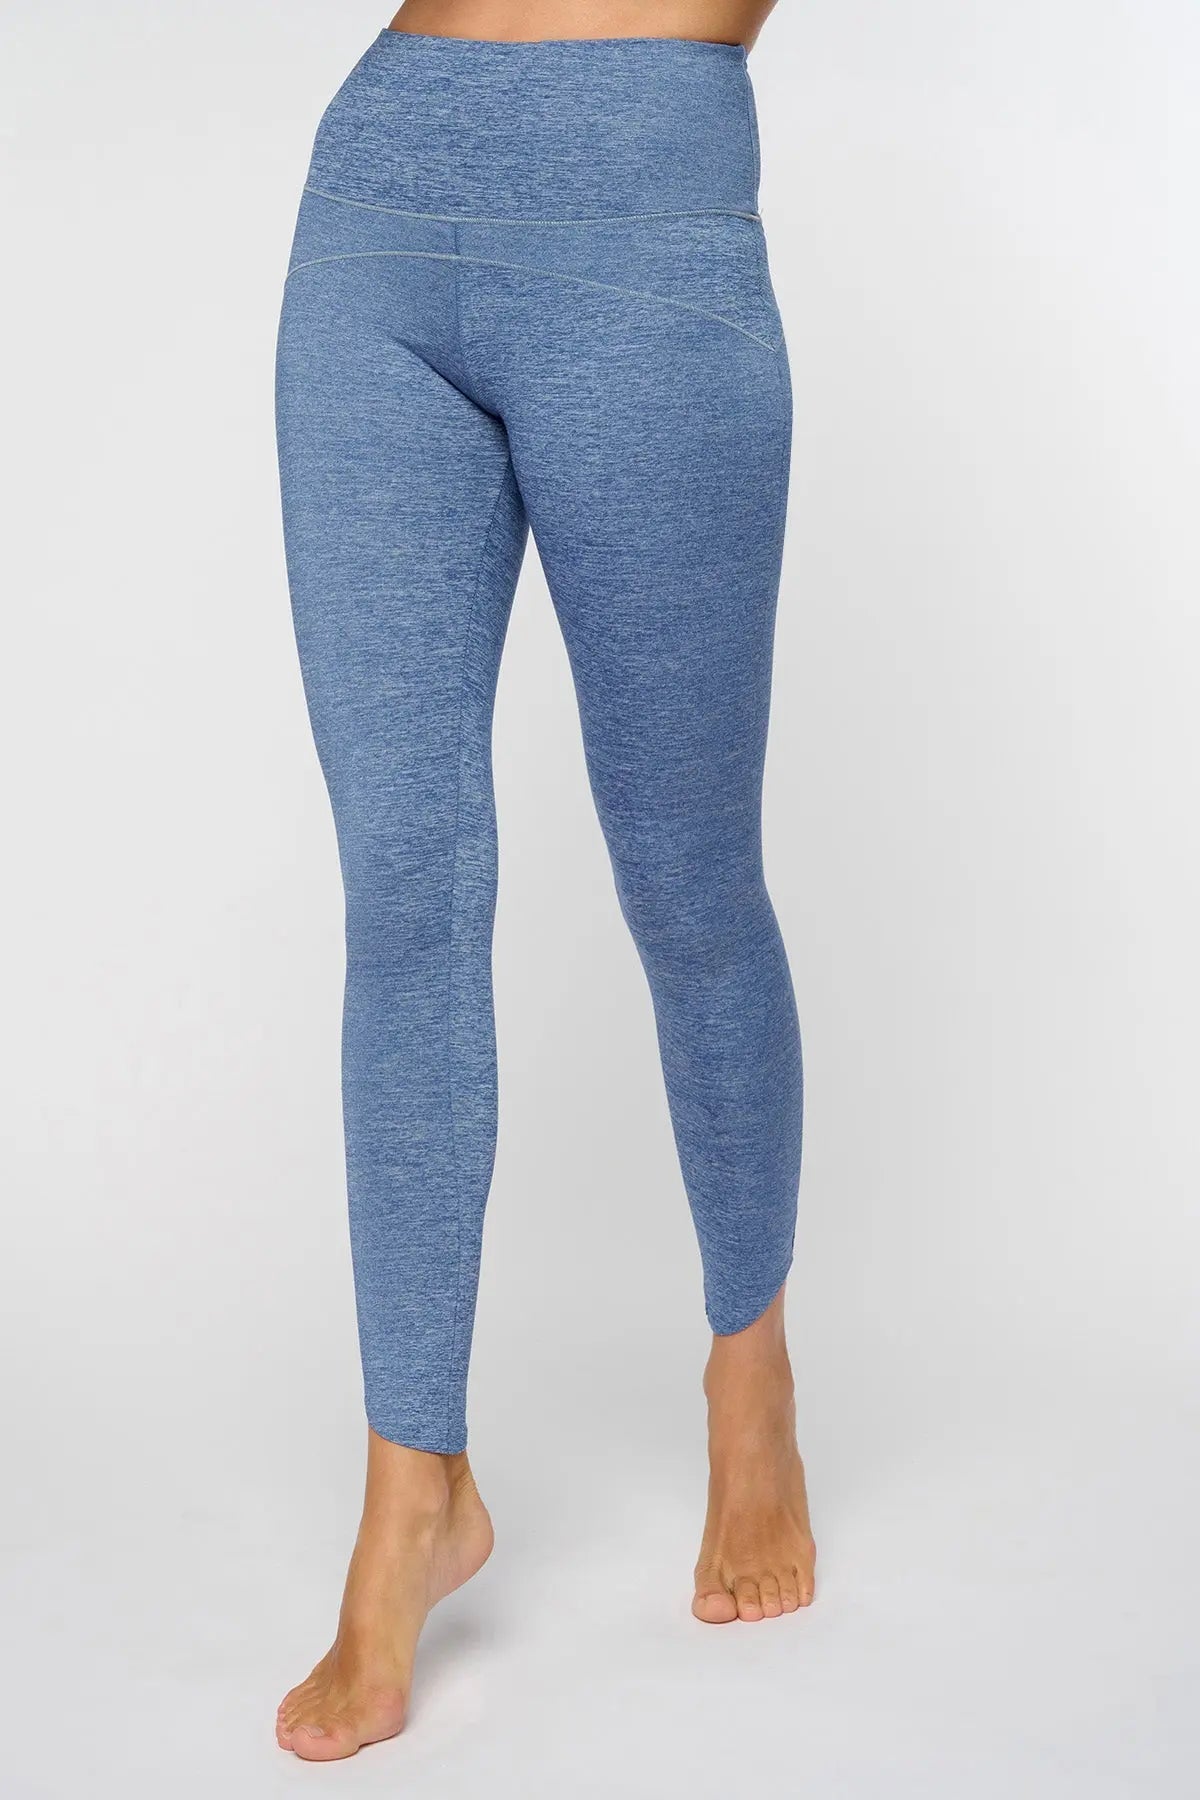 manipura legging bleu jeans yuj yoga